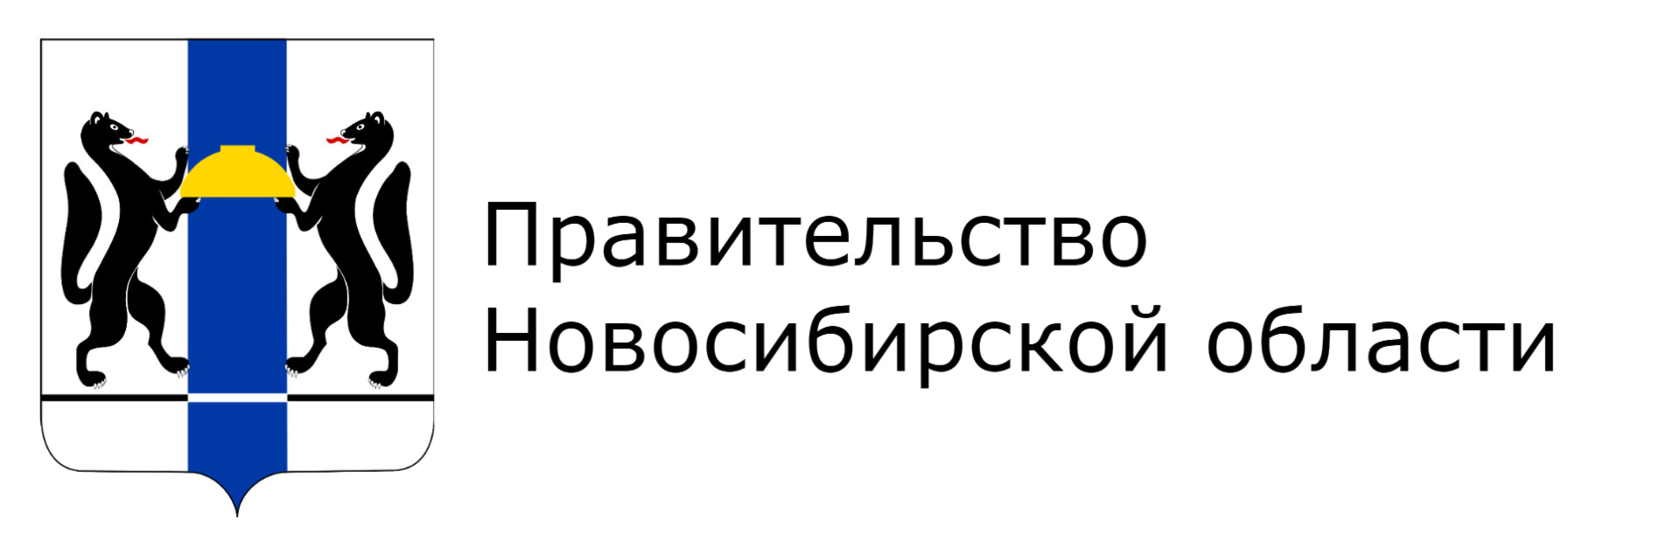 Правительство Новосибирской области герб. Логотип Министерства Новосибирской области. Правительство Новосибирской области лого. Министерство образования Новосибирской области логотип.